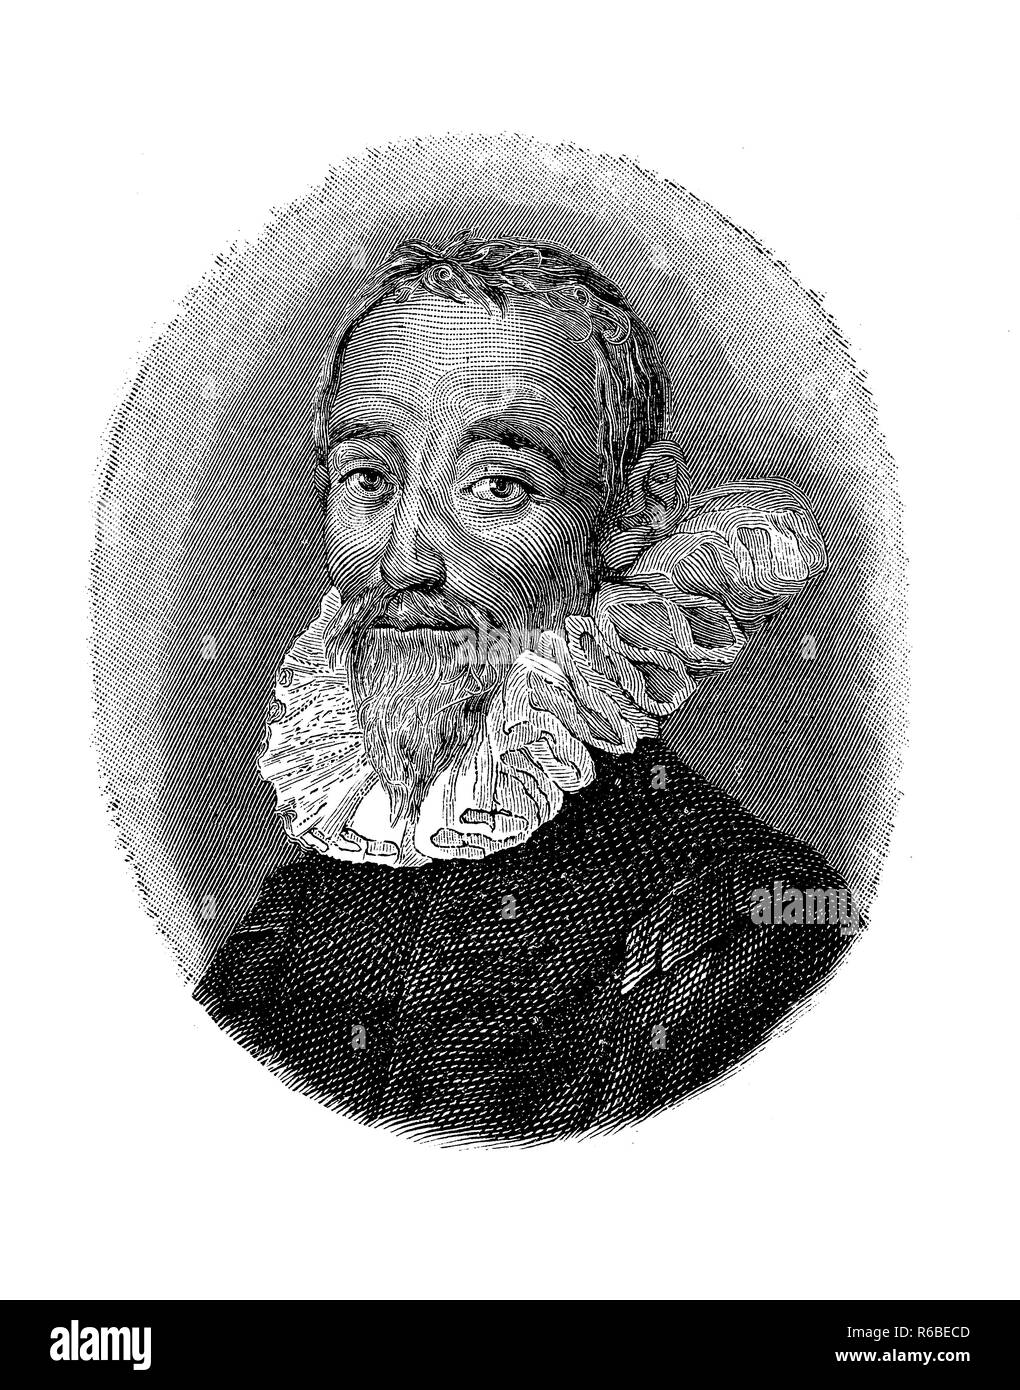 La gravure de portrait Vintage Gabriello Chiabrera (1552 - 1638), poète et dramaturge italien du verset, tragique, épique, lyrique et satirique pastorale . Banque D'Images